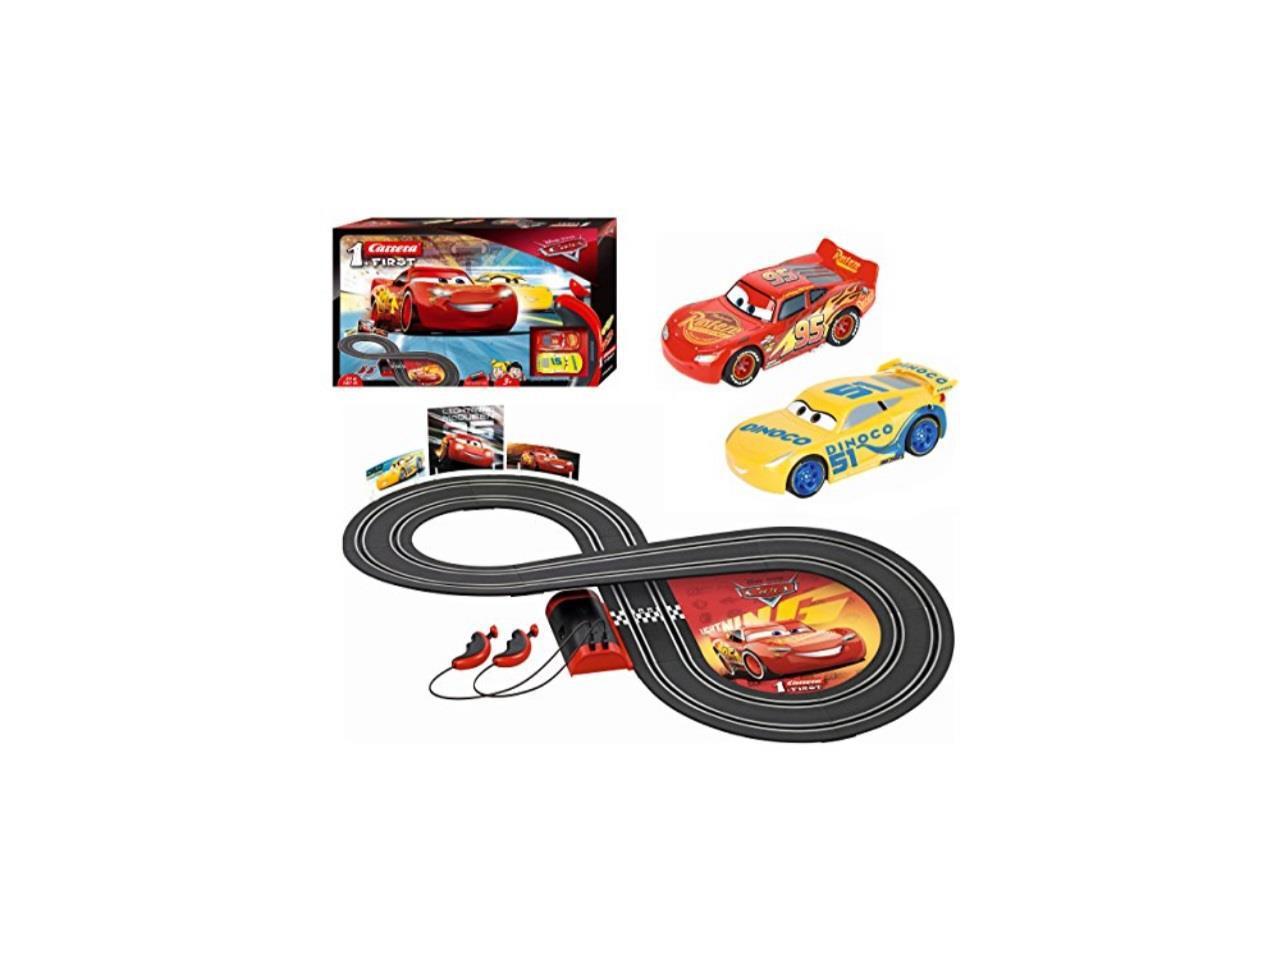 Disney Pixar Cars 3 Lightning Saetta McQueen Slot Car Model CARRERA 